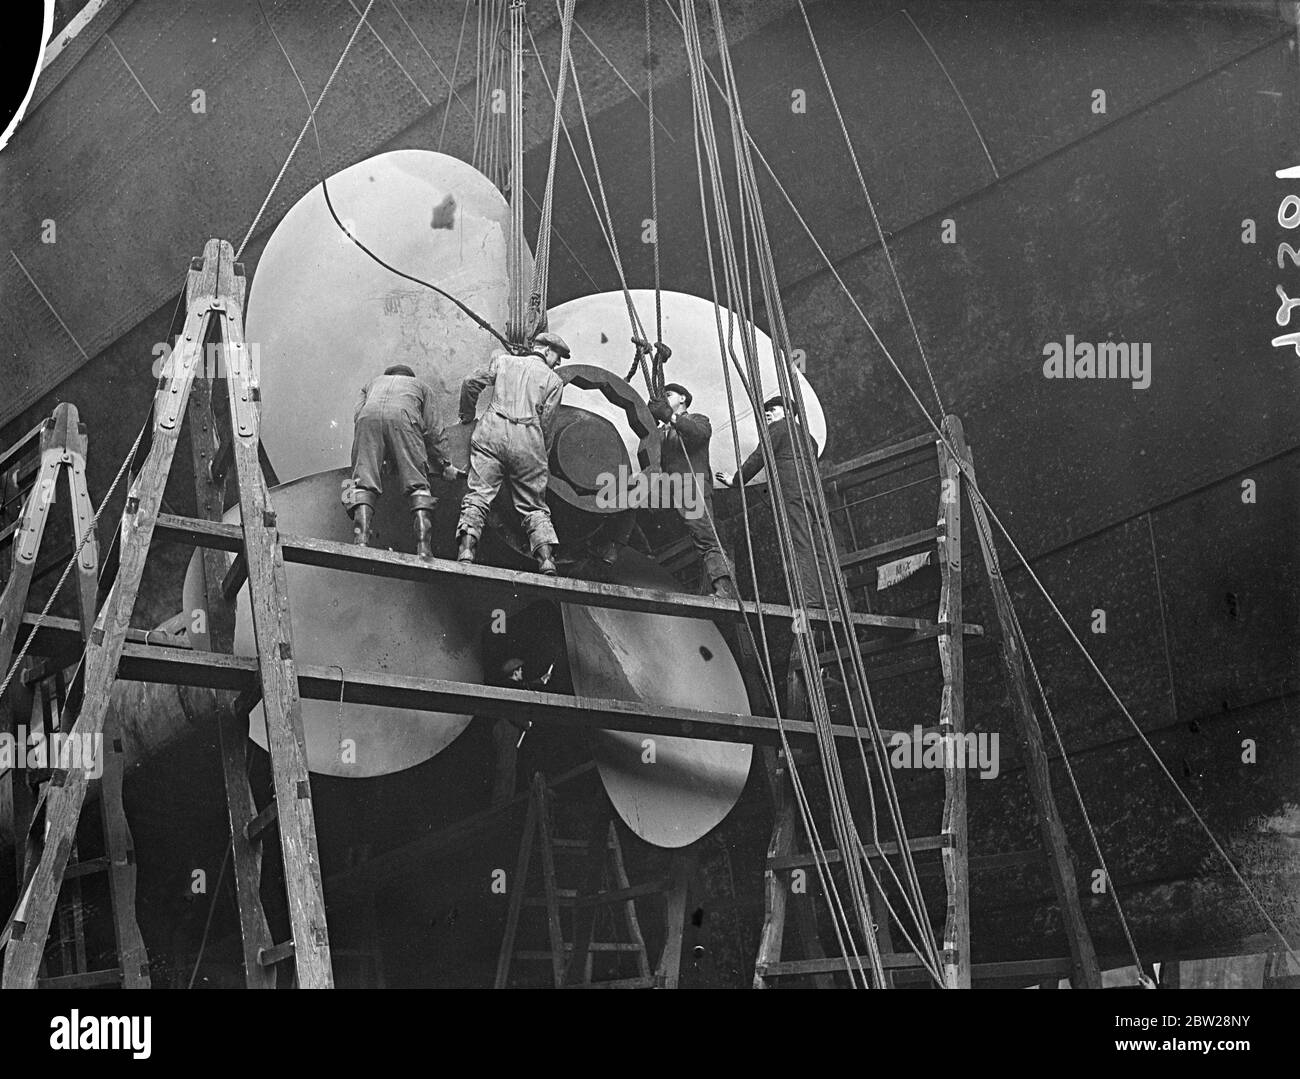 « RMS Queen Mary » a été révisé sur un quai sec. Une petite armée d'hommes est maintenant engagée à nettoyer la coque sous-marine du géant de 80,000 tonnes de paquebot 'Queen Mary' qui est maintenant dans le quai sec du roi George V à Southampton pour révision. Des expositions de photos, des hommes travaillent sur l'un des hélices géantes. 30 décembre 1937 Banque D'Images